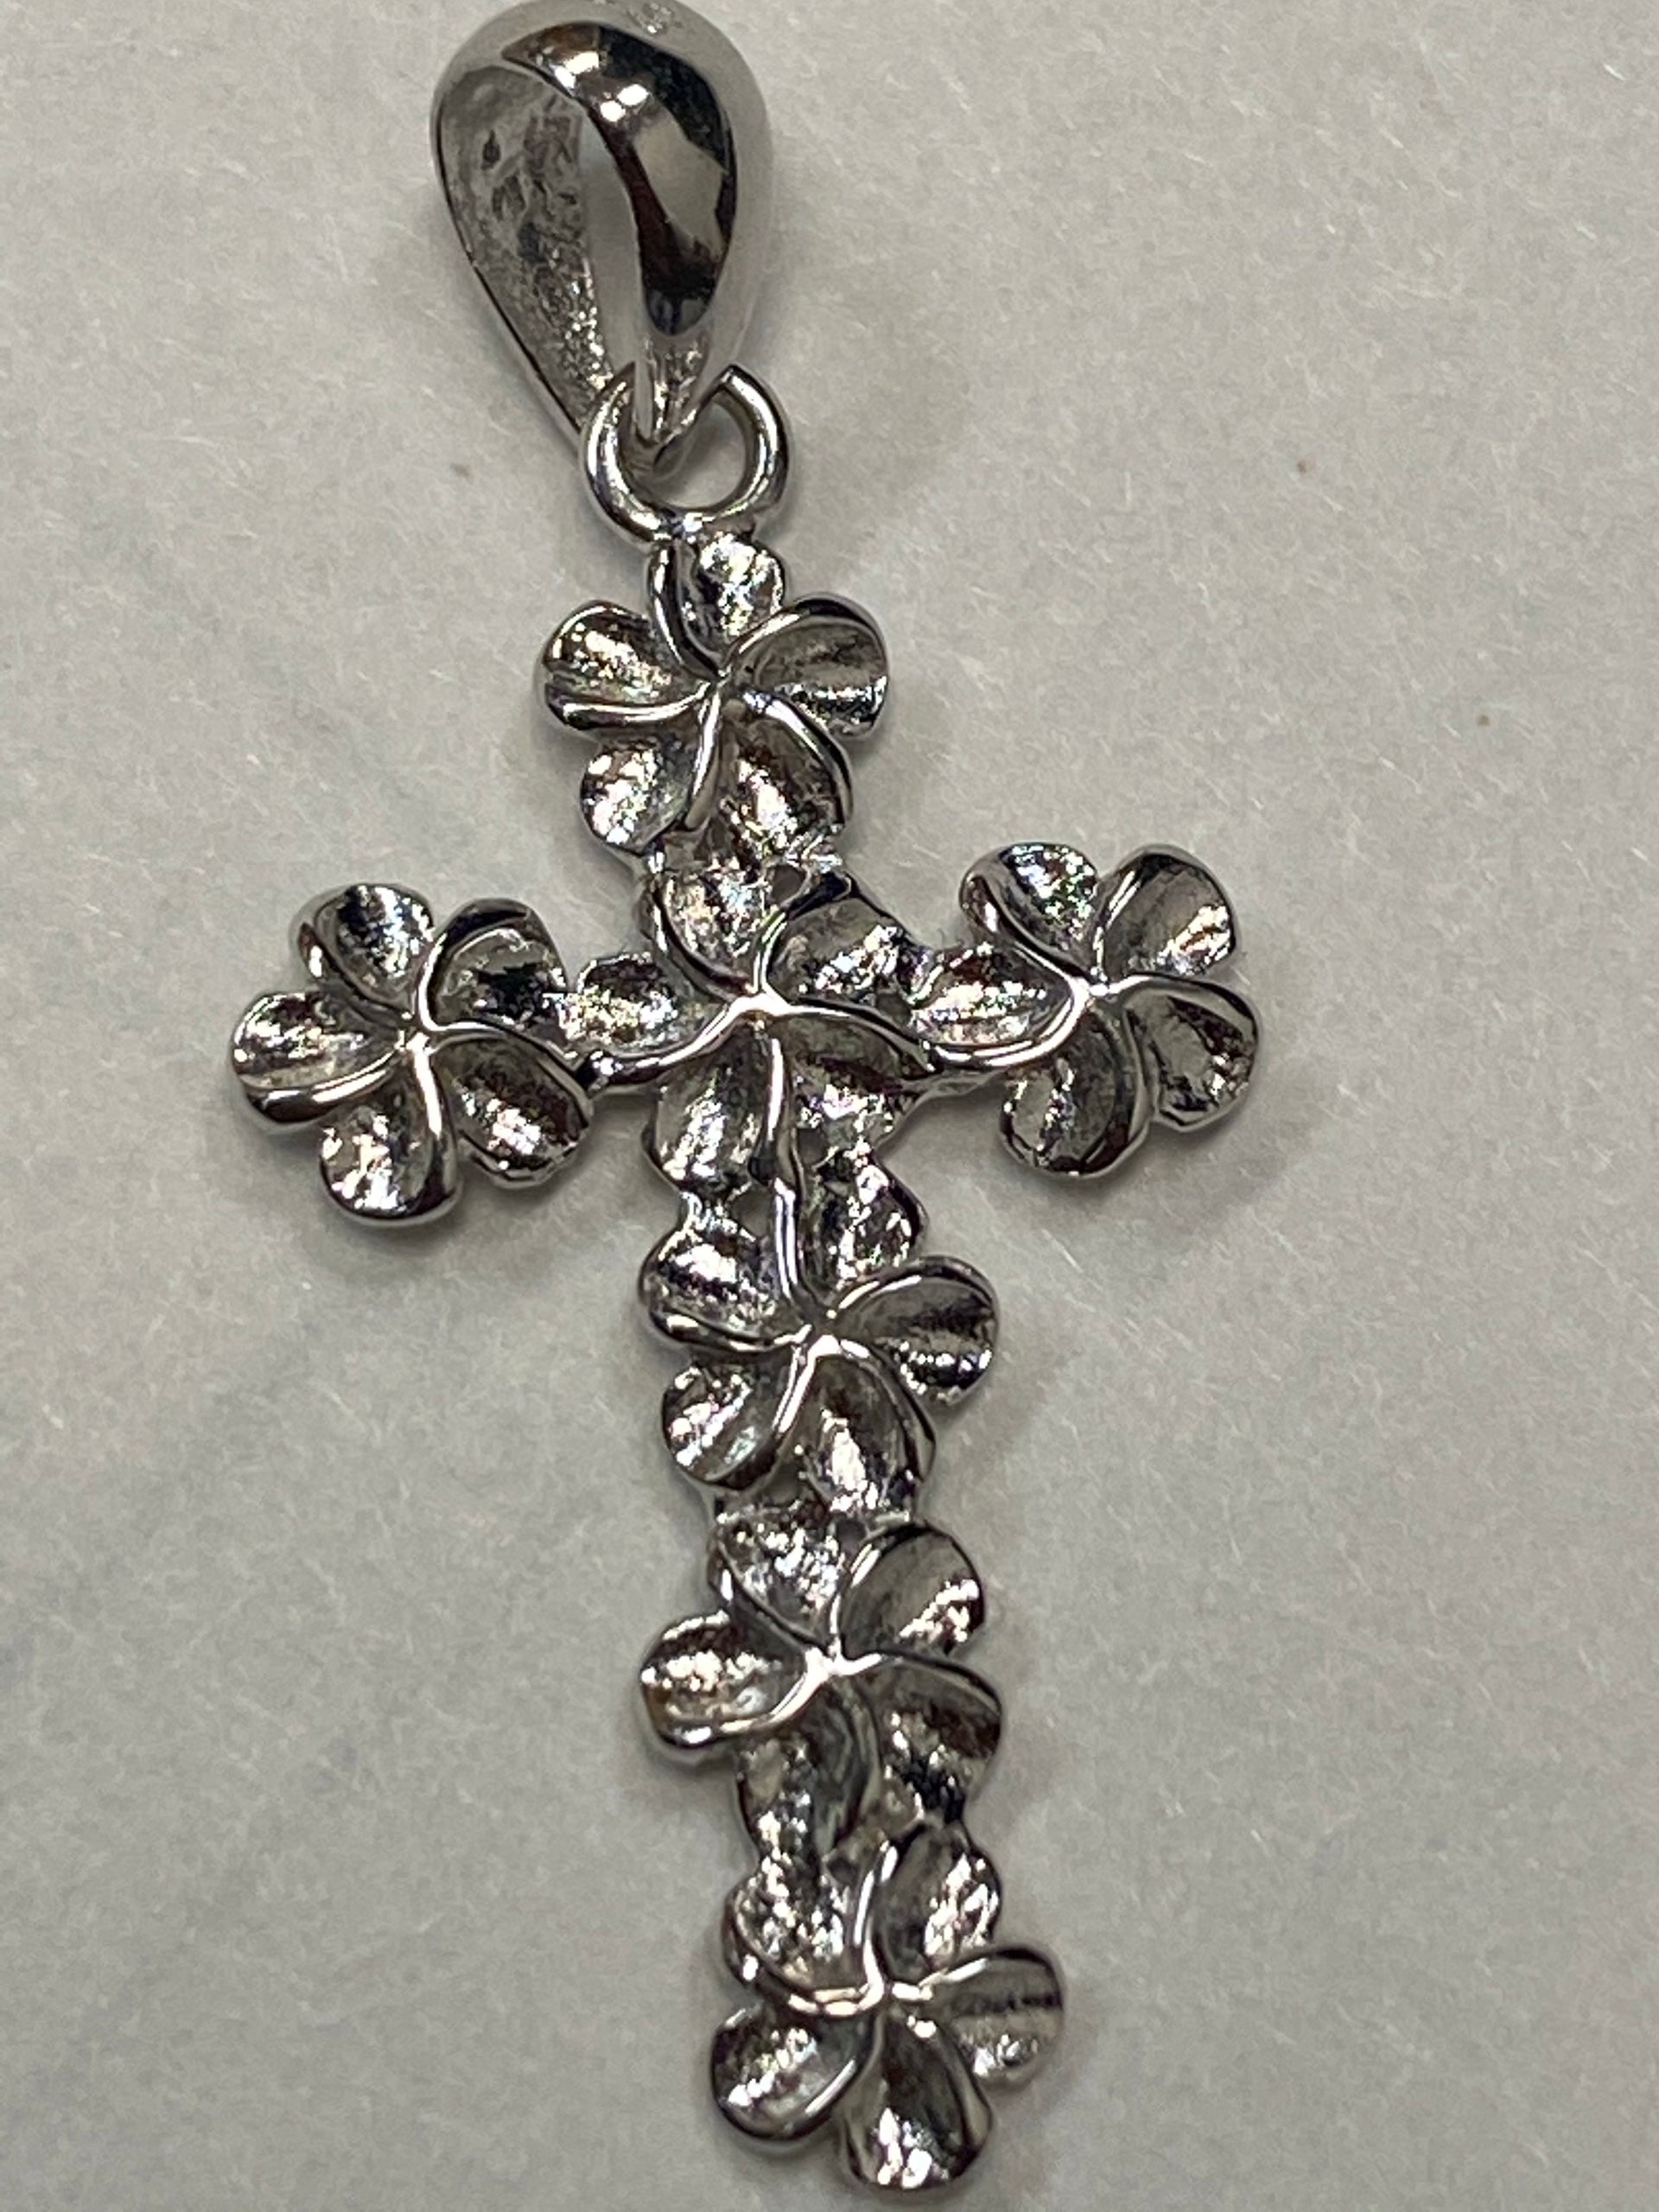 1800 flowers pendant & necklace